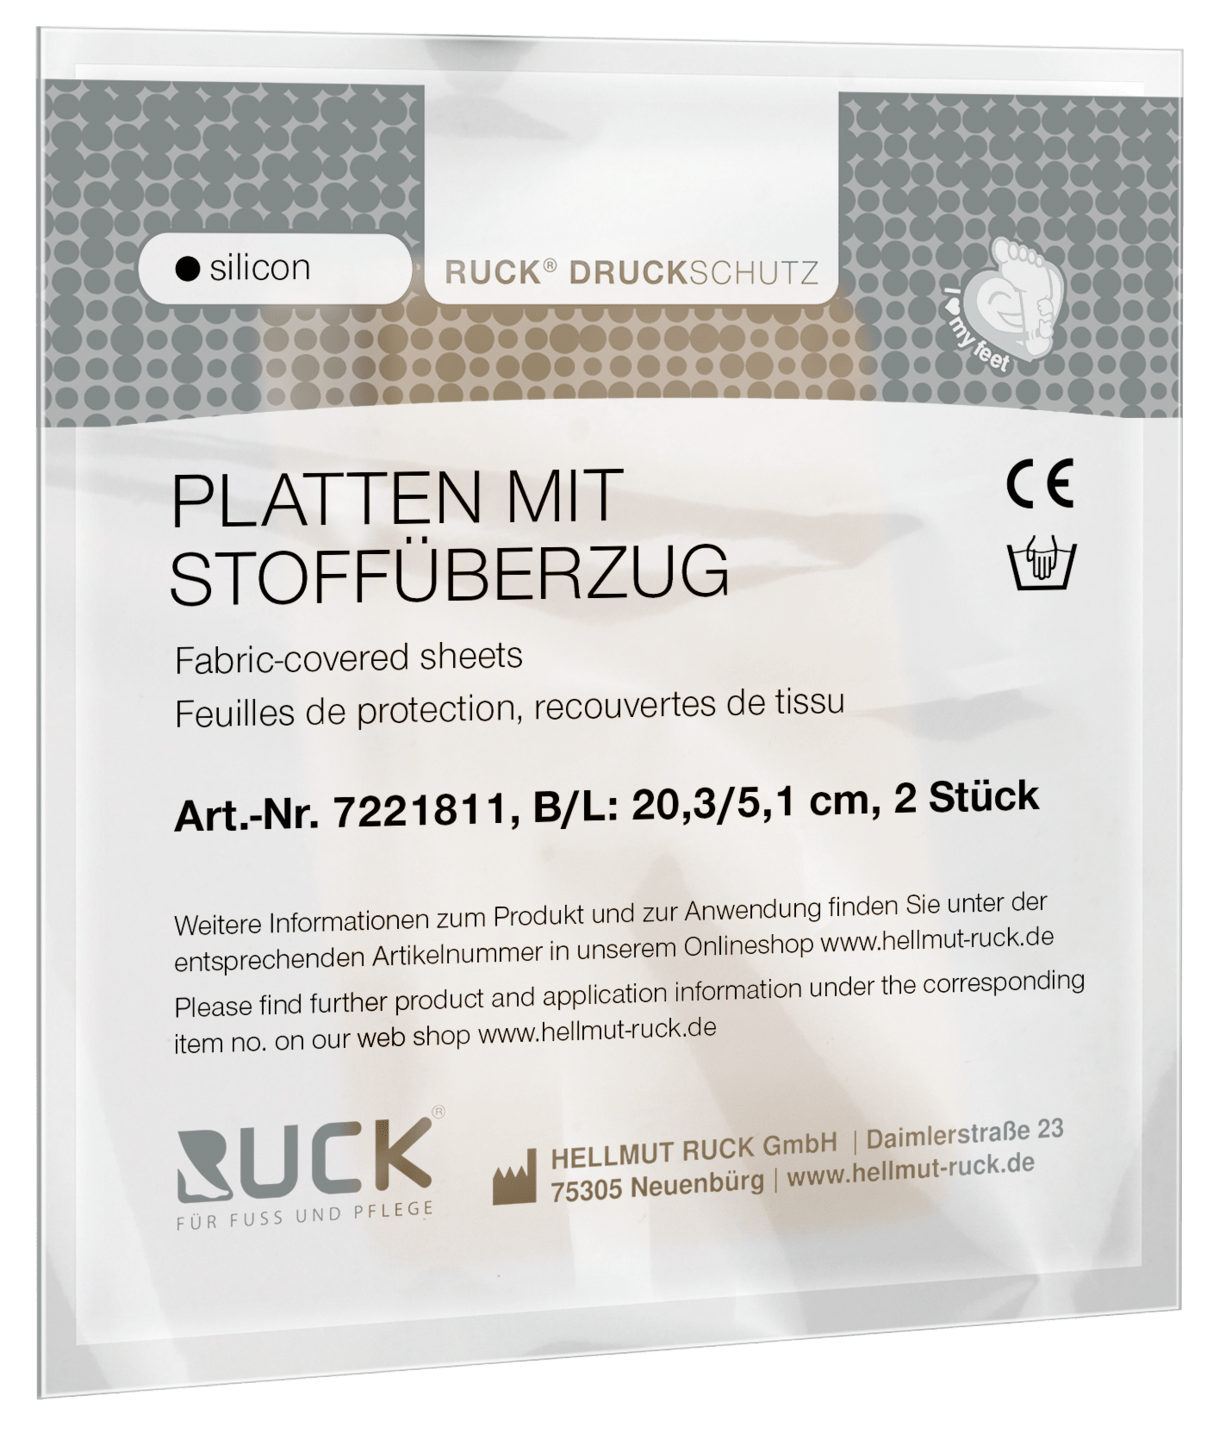 RUCK DRUCKSCHUTZ - Platten mit Stoffüberzug